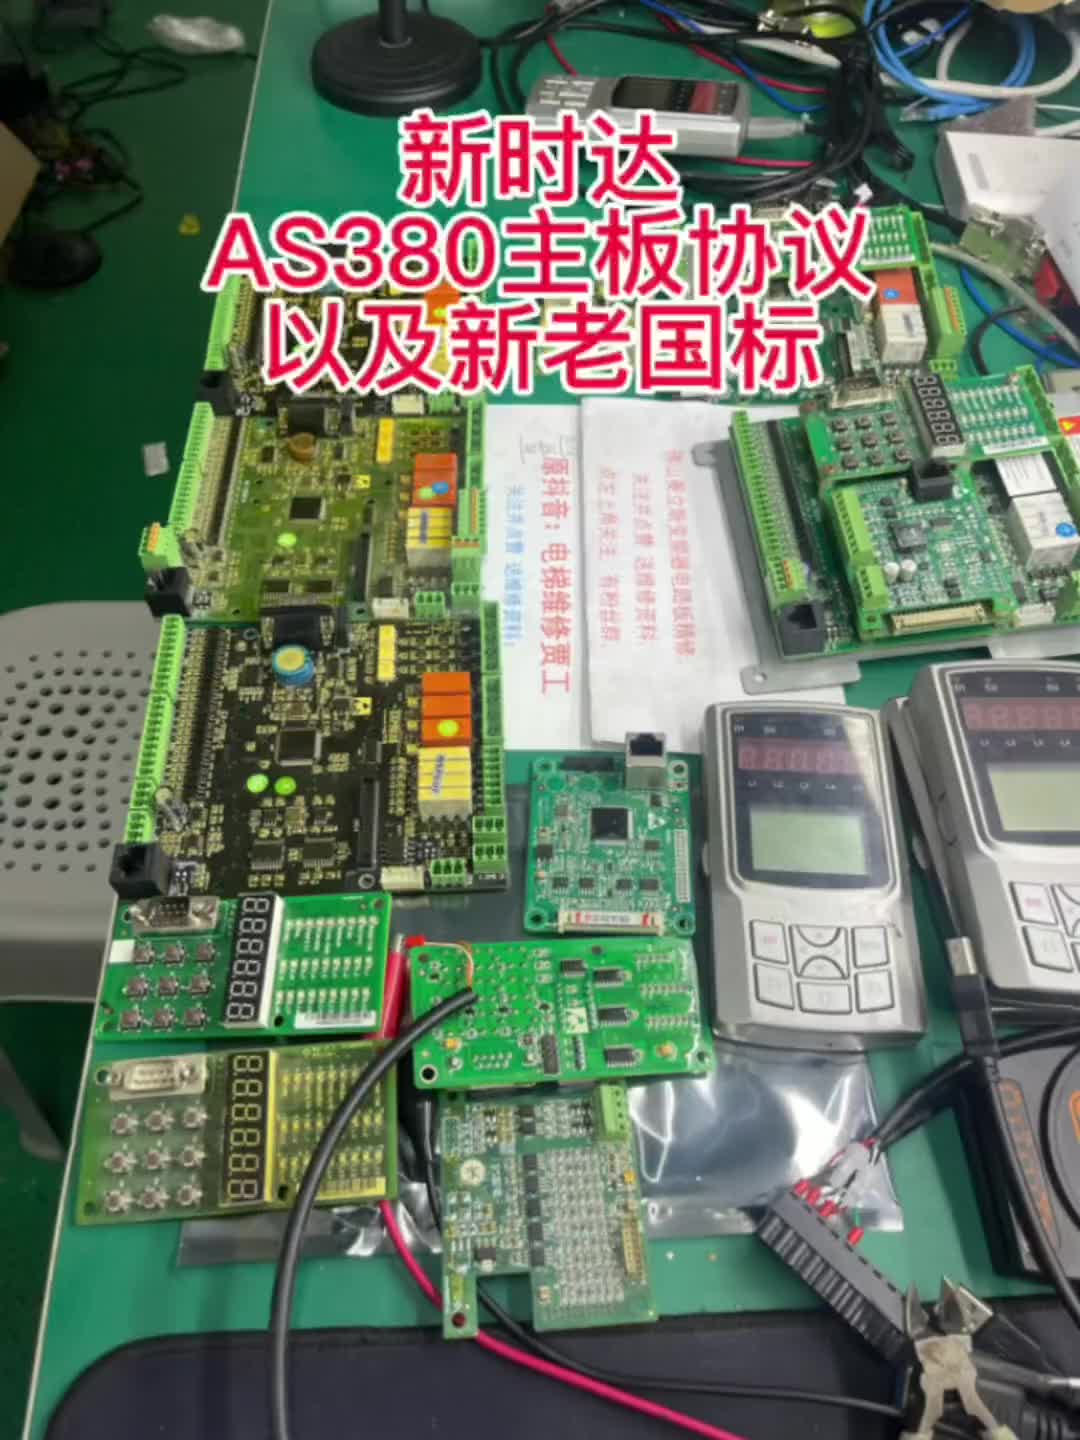 新时达系统AS380一体机的主板都有哪些配件？有什么作用？新老国标和协议程序区分#变频器维修 #新时达 